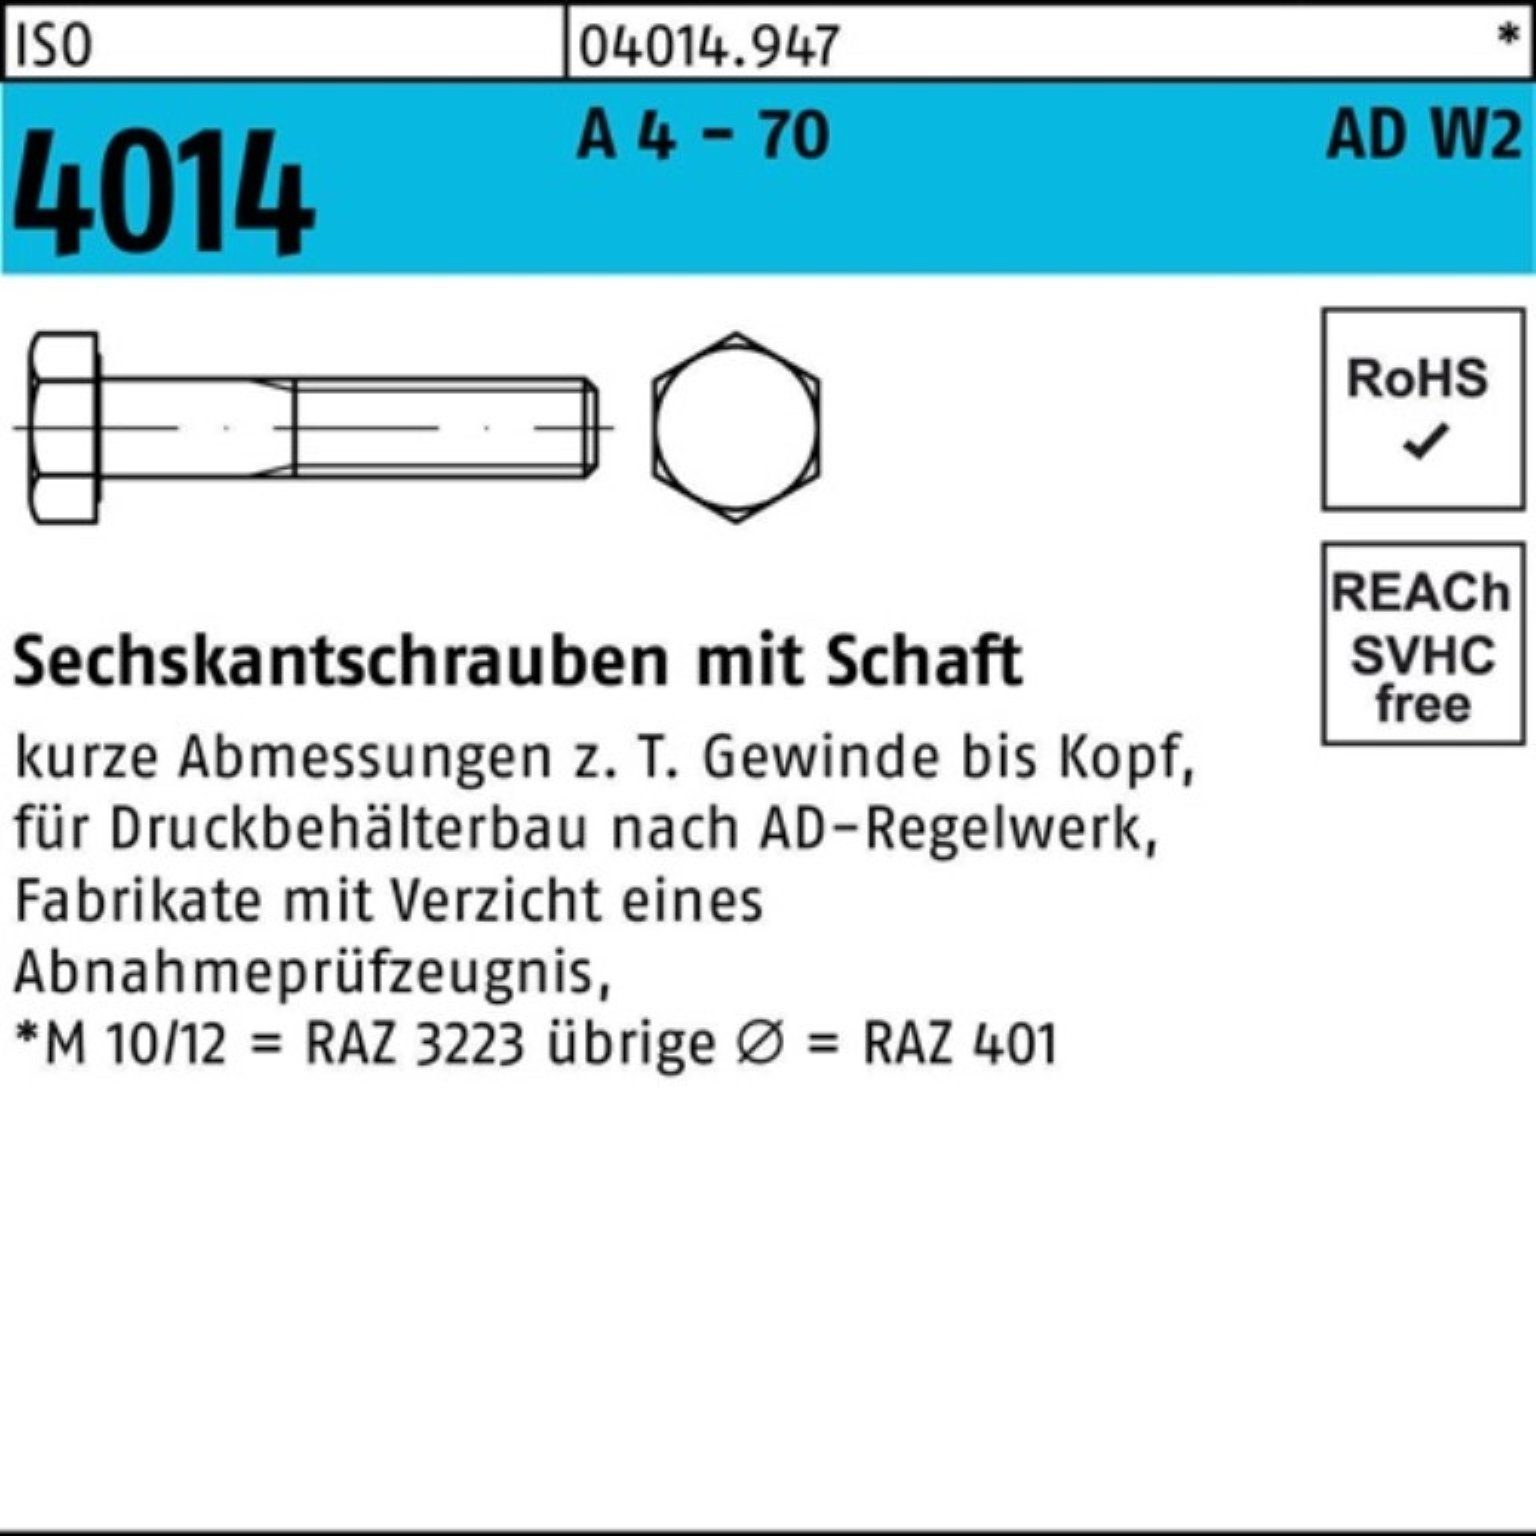 Sechskantschraube 4 Sechskantschraube ISO 200 Pack AD-W2 Bufab 100er A 1 70 - 4014 Schaft M16x